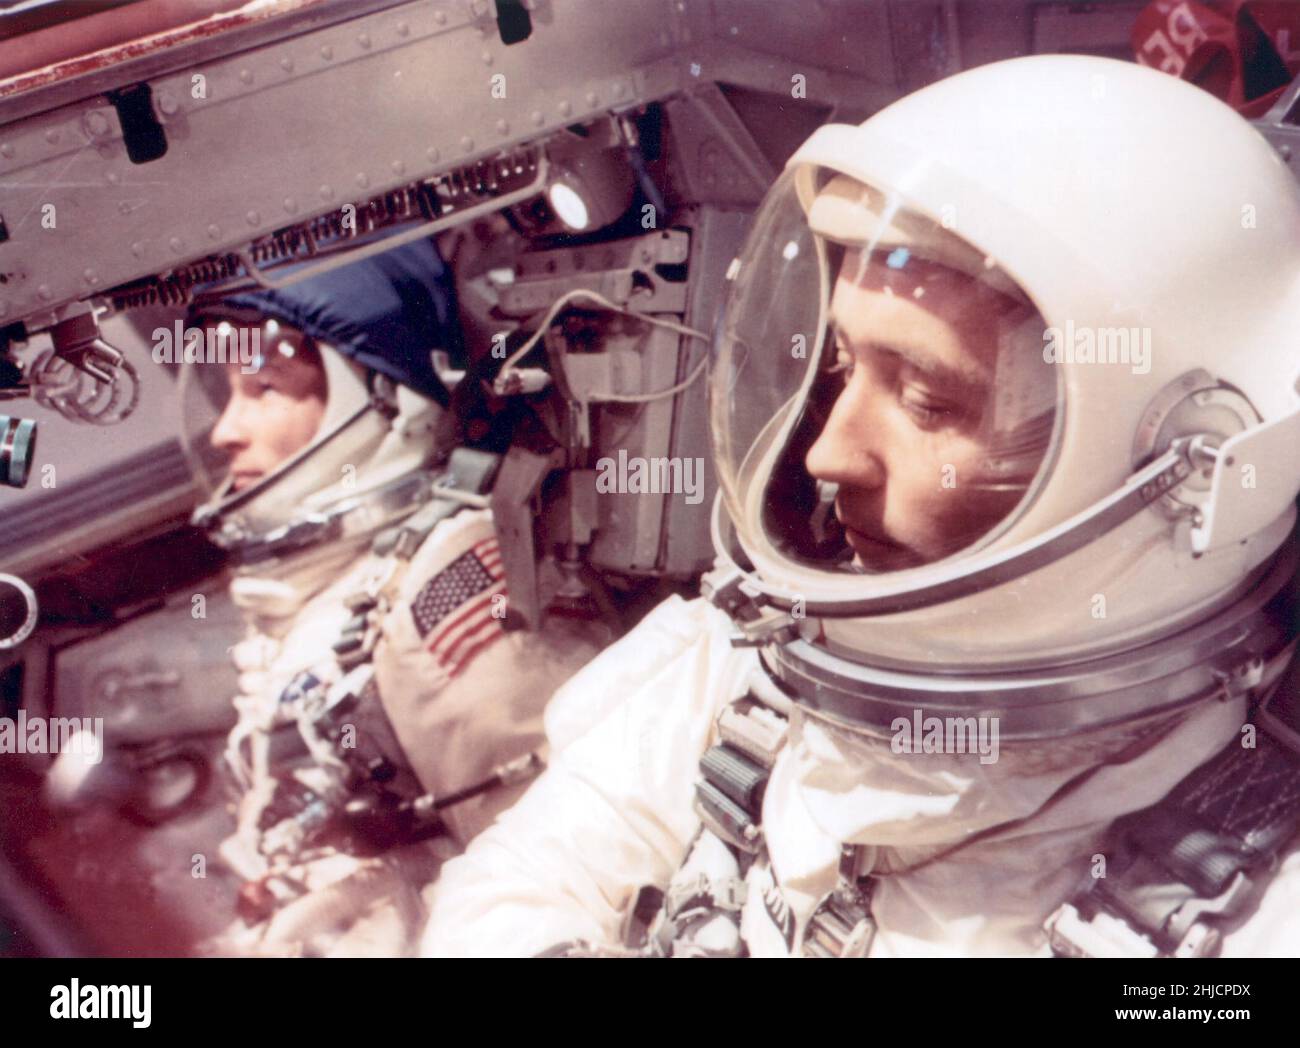 Gli astronauti Edward H. White II (a sinistra) e James A. McDivitt all'interno del veicolo spaziale Gemini IV aspettano il liftoff. L'obiettivo della missione Gemini IV era quello di valutare e testare gli effetti di quattro giorni nello spazio sull'equipaggio, sulle attrezzature e sui sistemi di controllo. Il pilota Edward White II ha realizzato con successo il primo gessetto spaziale statunitense durante la missione Gemini IV. Foto Stock